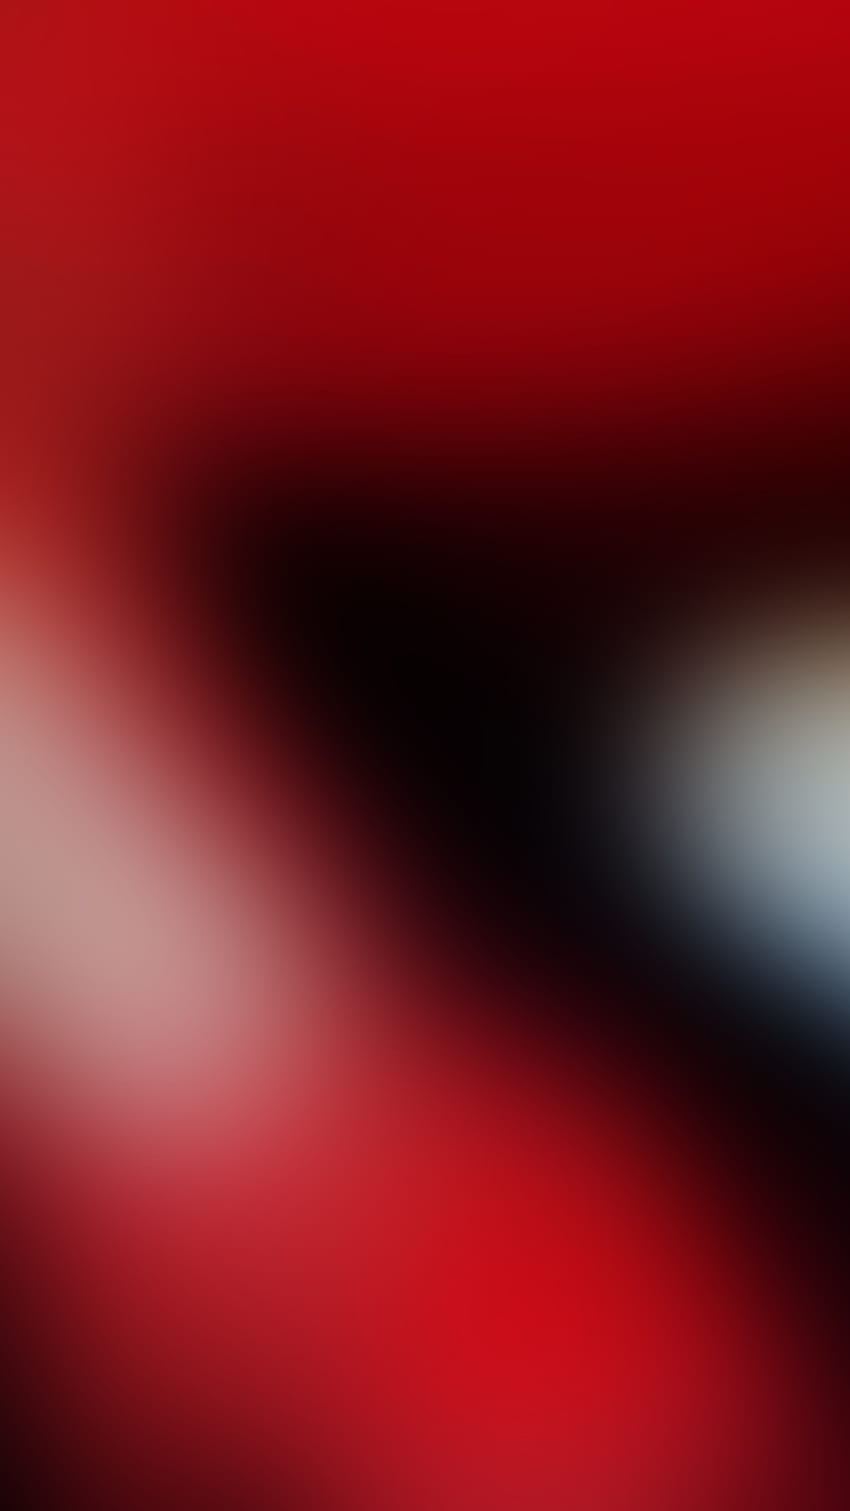 Merah-hitam, gradien, bercahaya, abstrak wallpaper ponsel HD